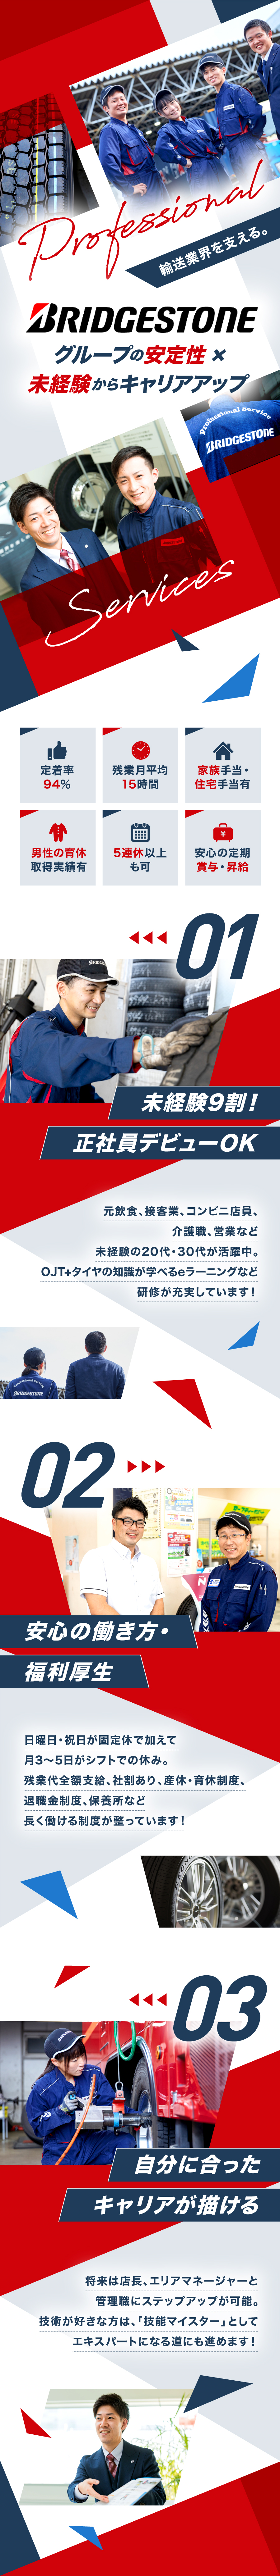 ブリヂストンタイヤサービス東日本株式会社からのメッセージ